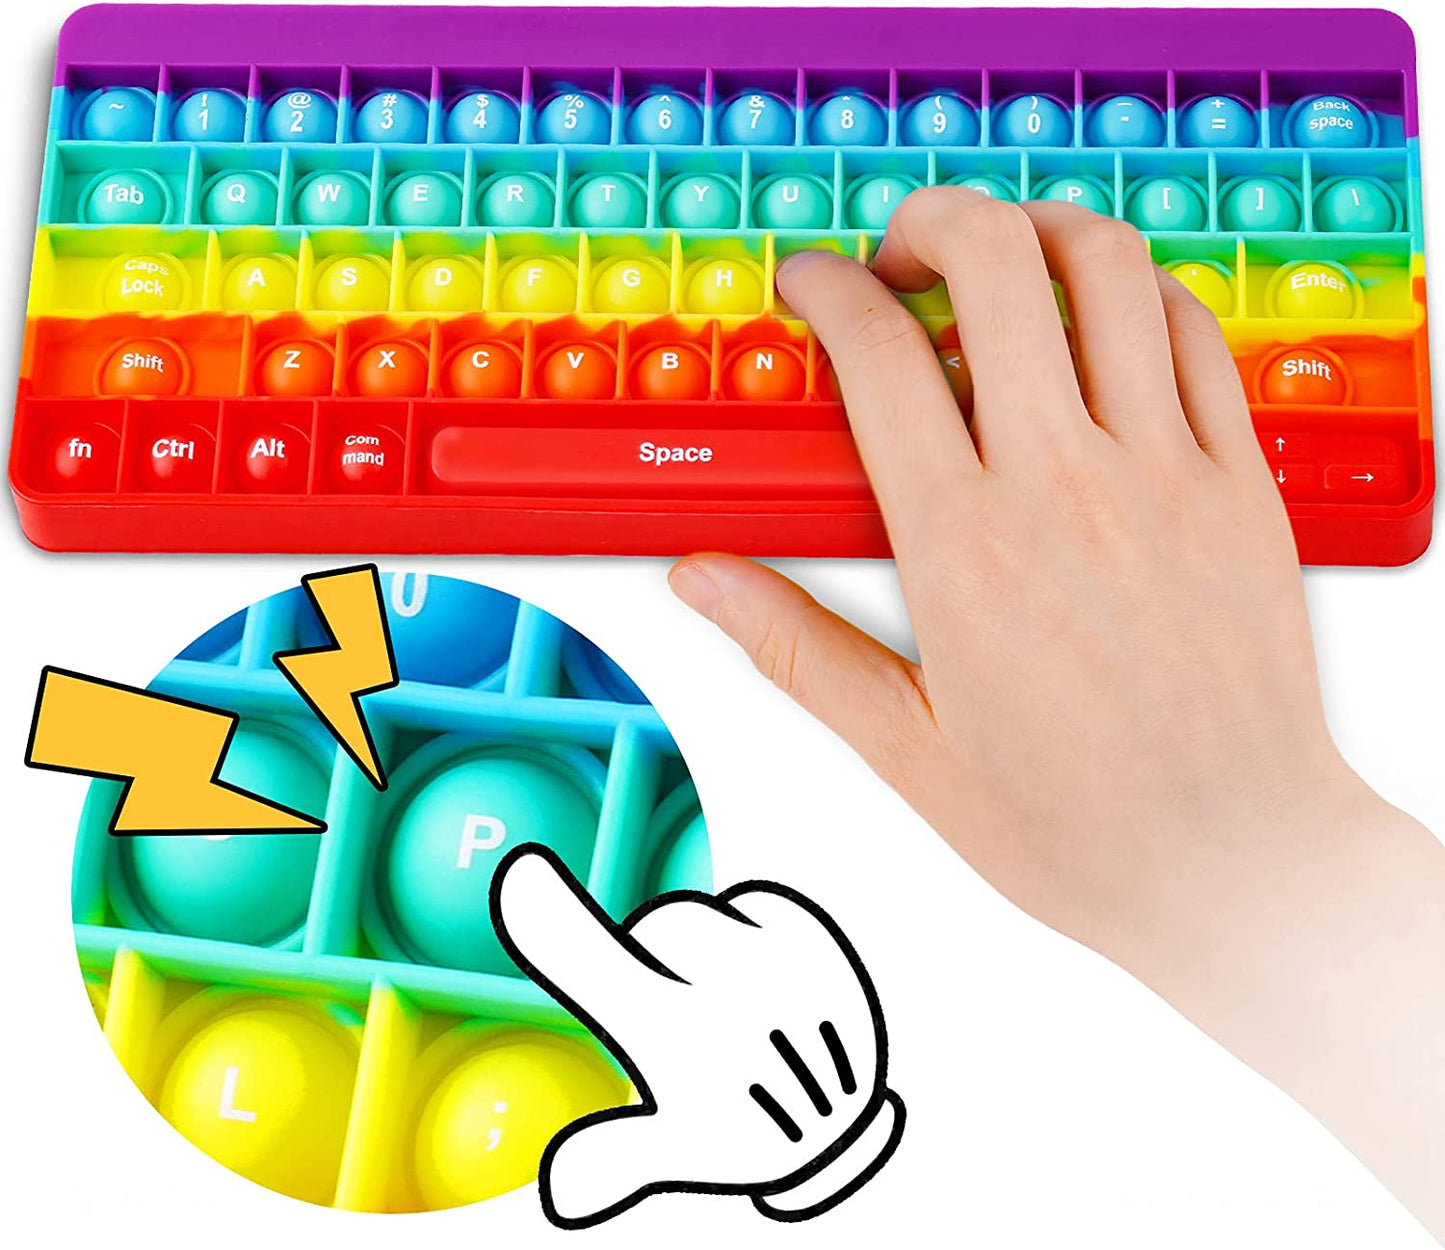 Pop Keyboard Silicone Bubble Popper Fidget Sensory Toy Big Size 10.4x4.1 Letters